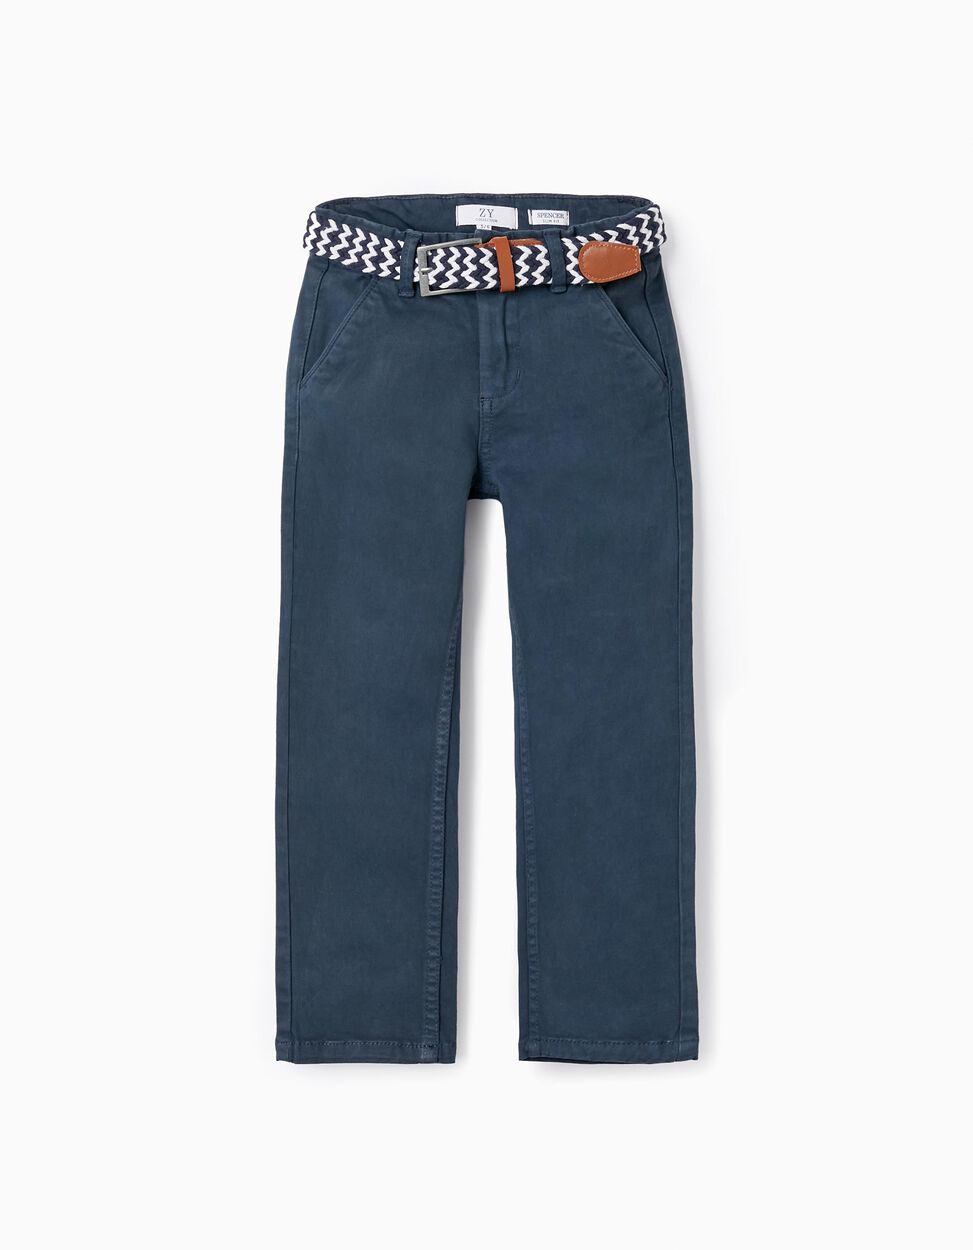 Comprar Online Pantalones de Sarga con Cinturón para Niño 'Slim Fit', Azul Oscuro